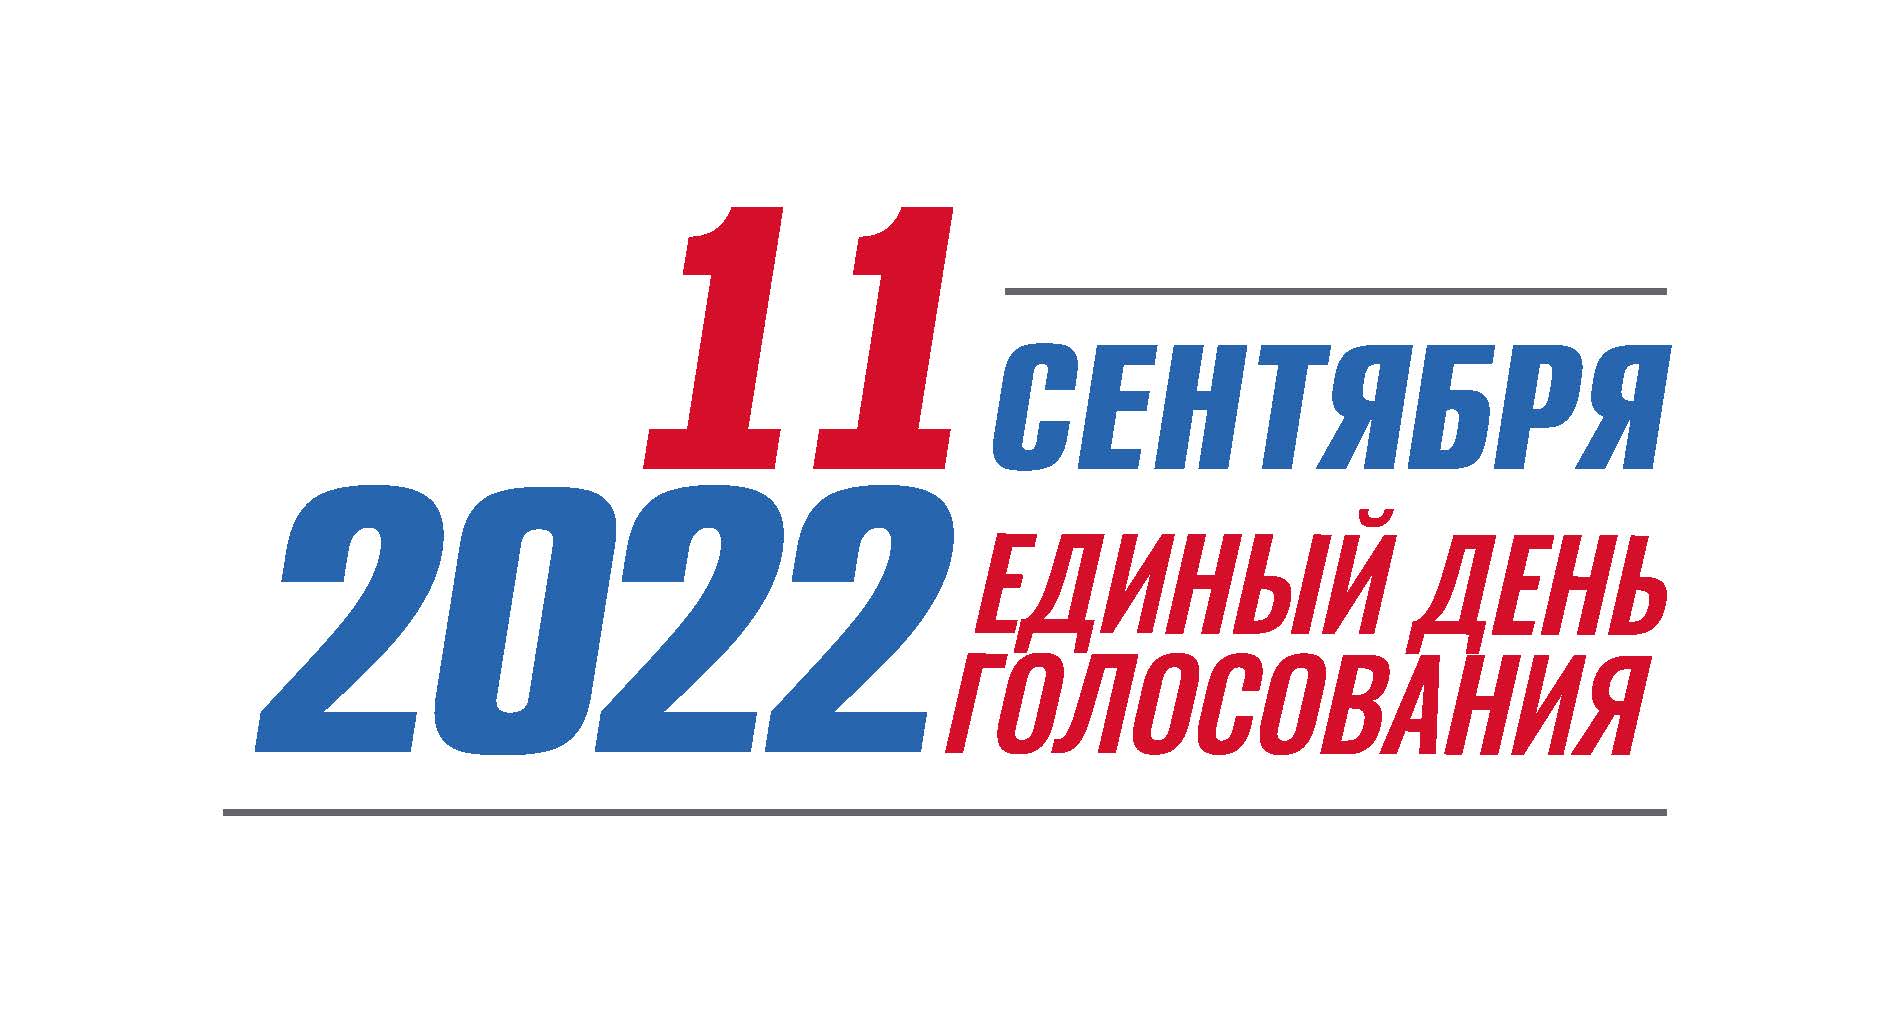 Выборы 11 б. Единый день голосования 11 сентября 2022 года. Единый день голосования 2022. Единый день голосования 2022 логотип. Выборы 2022 единый день голосования.